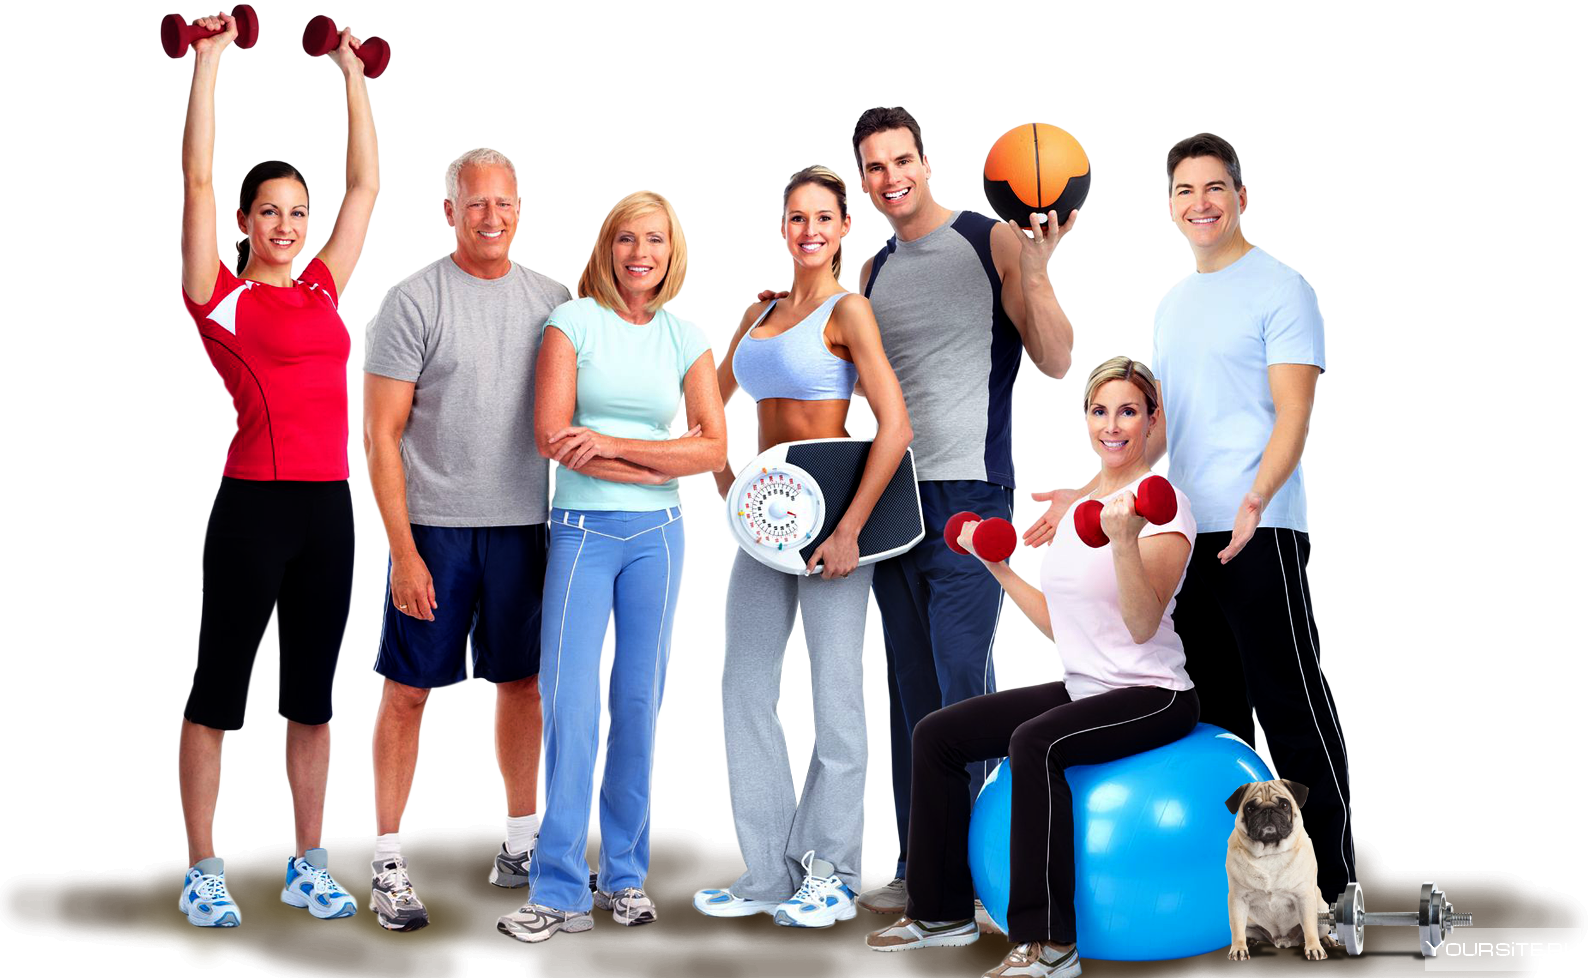 Занятие физкультурой и спортом. Физическая активность и здоровье. Спортивные люди. ЗОЖ спорт. Повышение активности молодежи